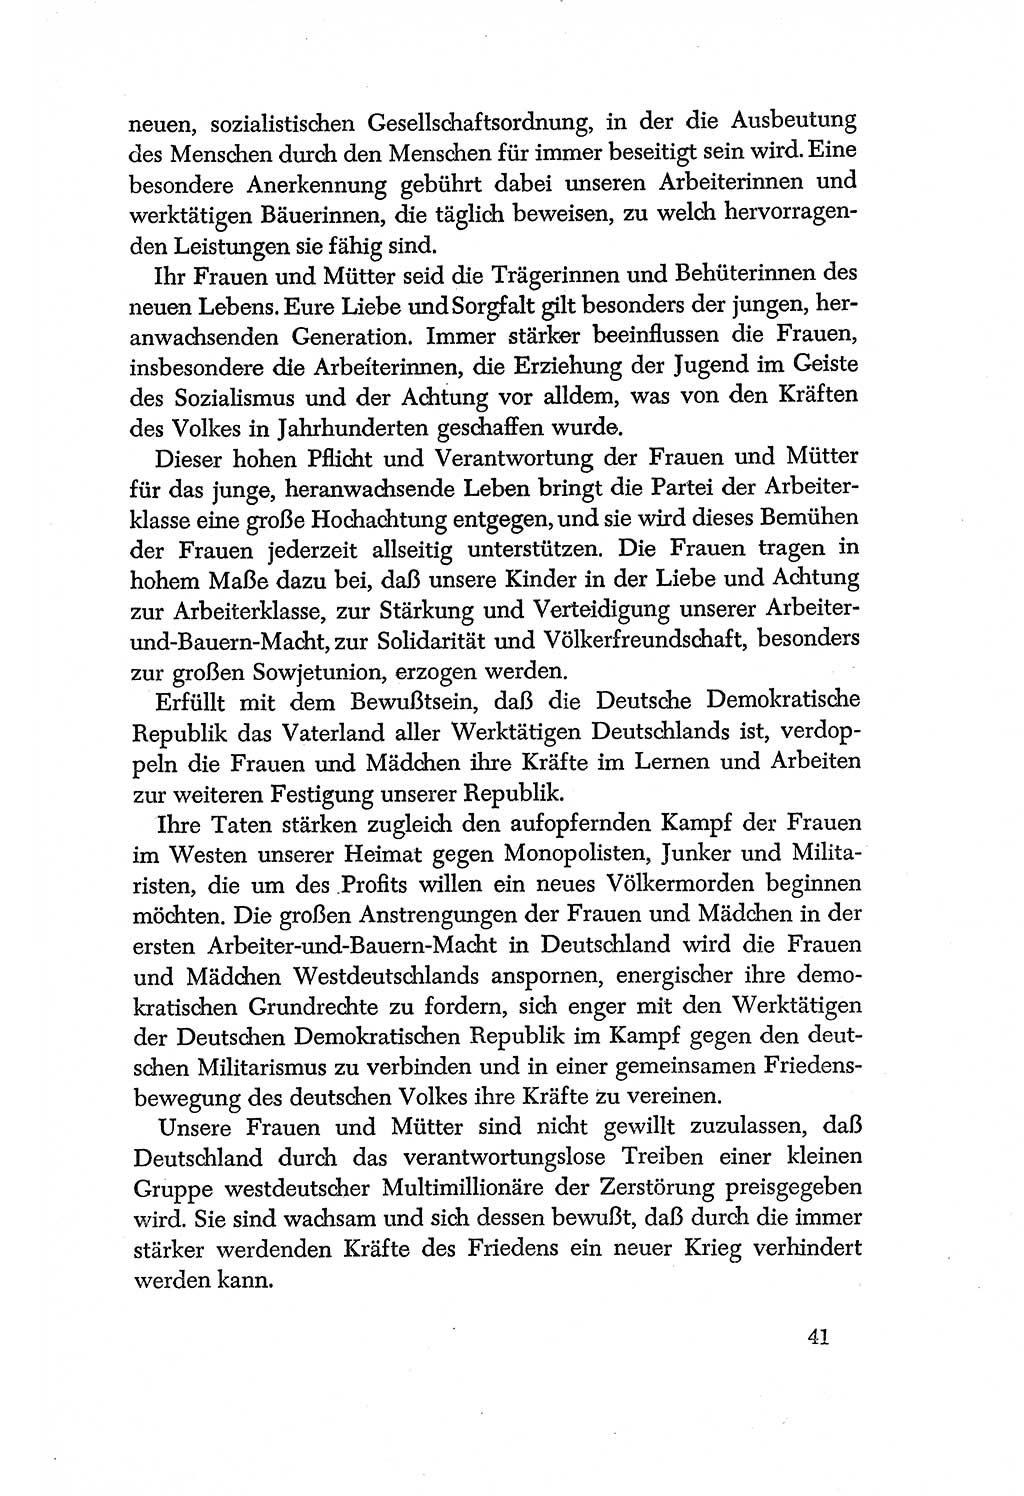 Dokumente der Sozialistischen Einheitspartei Deutschlands (SED) [Deutsche Demokratische Republik (DDR)] 1956-1957, Seite 41 (Dok. SED DDR 1956-1957, S. 41)